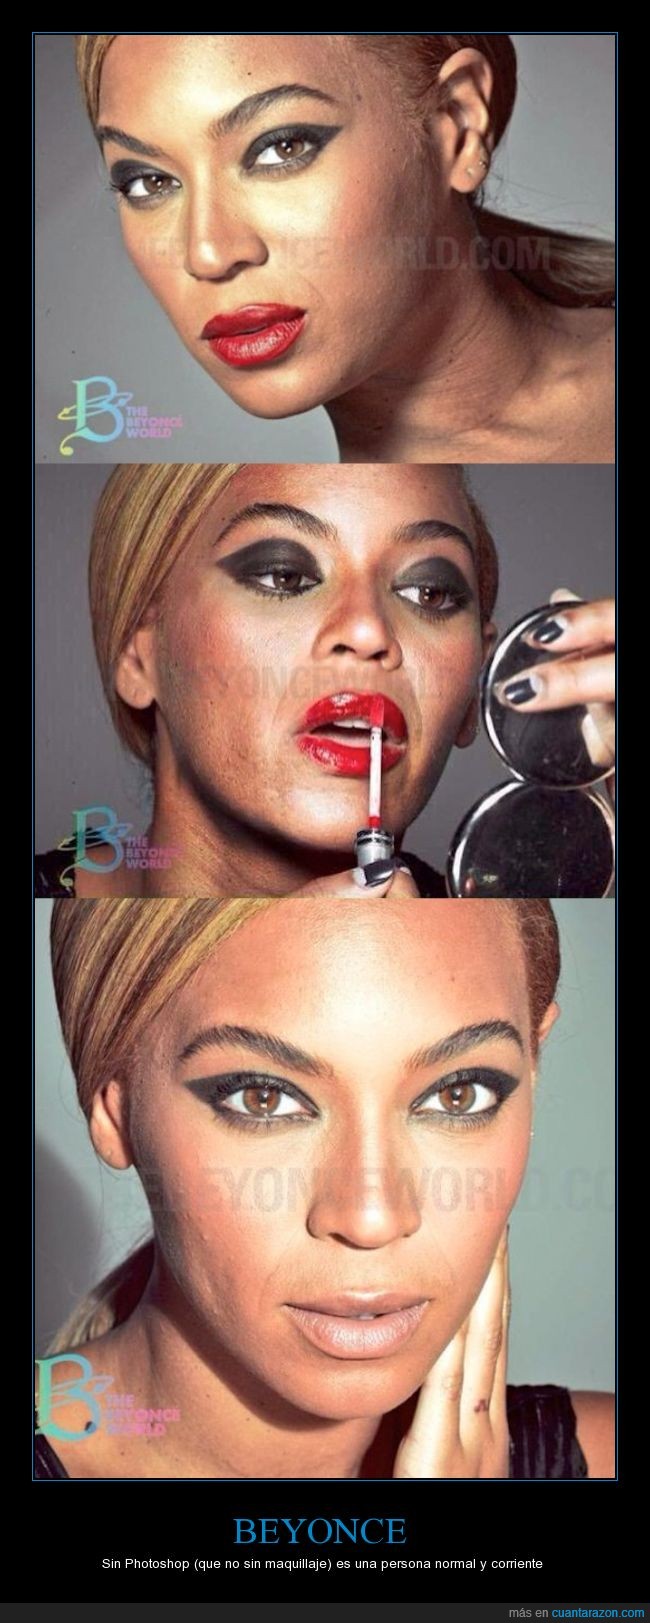 Beyonce,cara,piel,maquillaje,photoshop,truco,montaje,realidad,real,verdad,imperfecciones como cualquiera